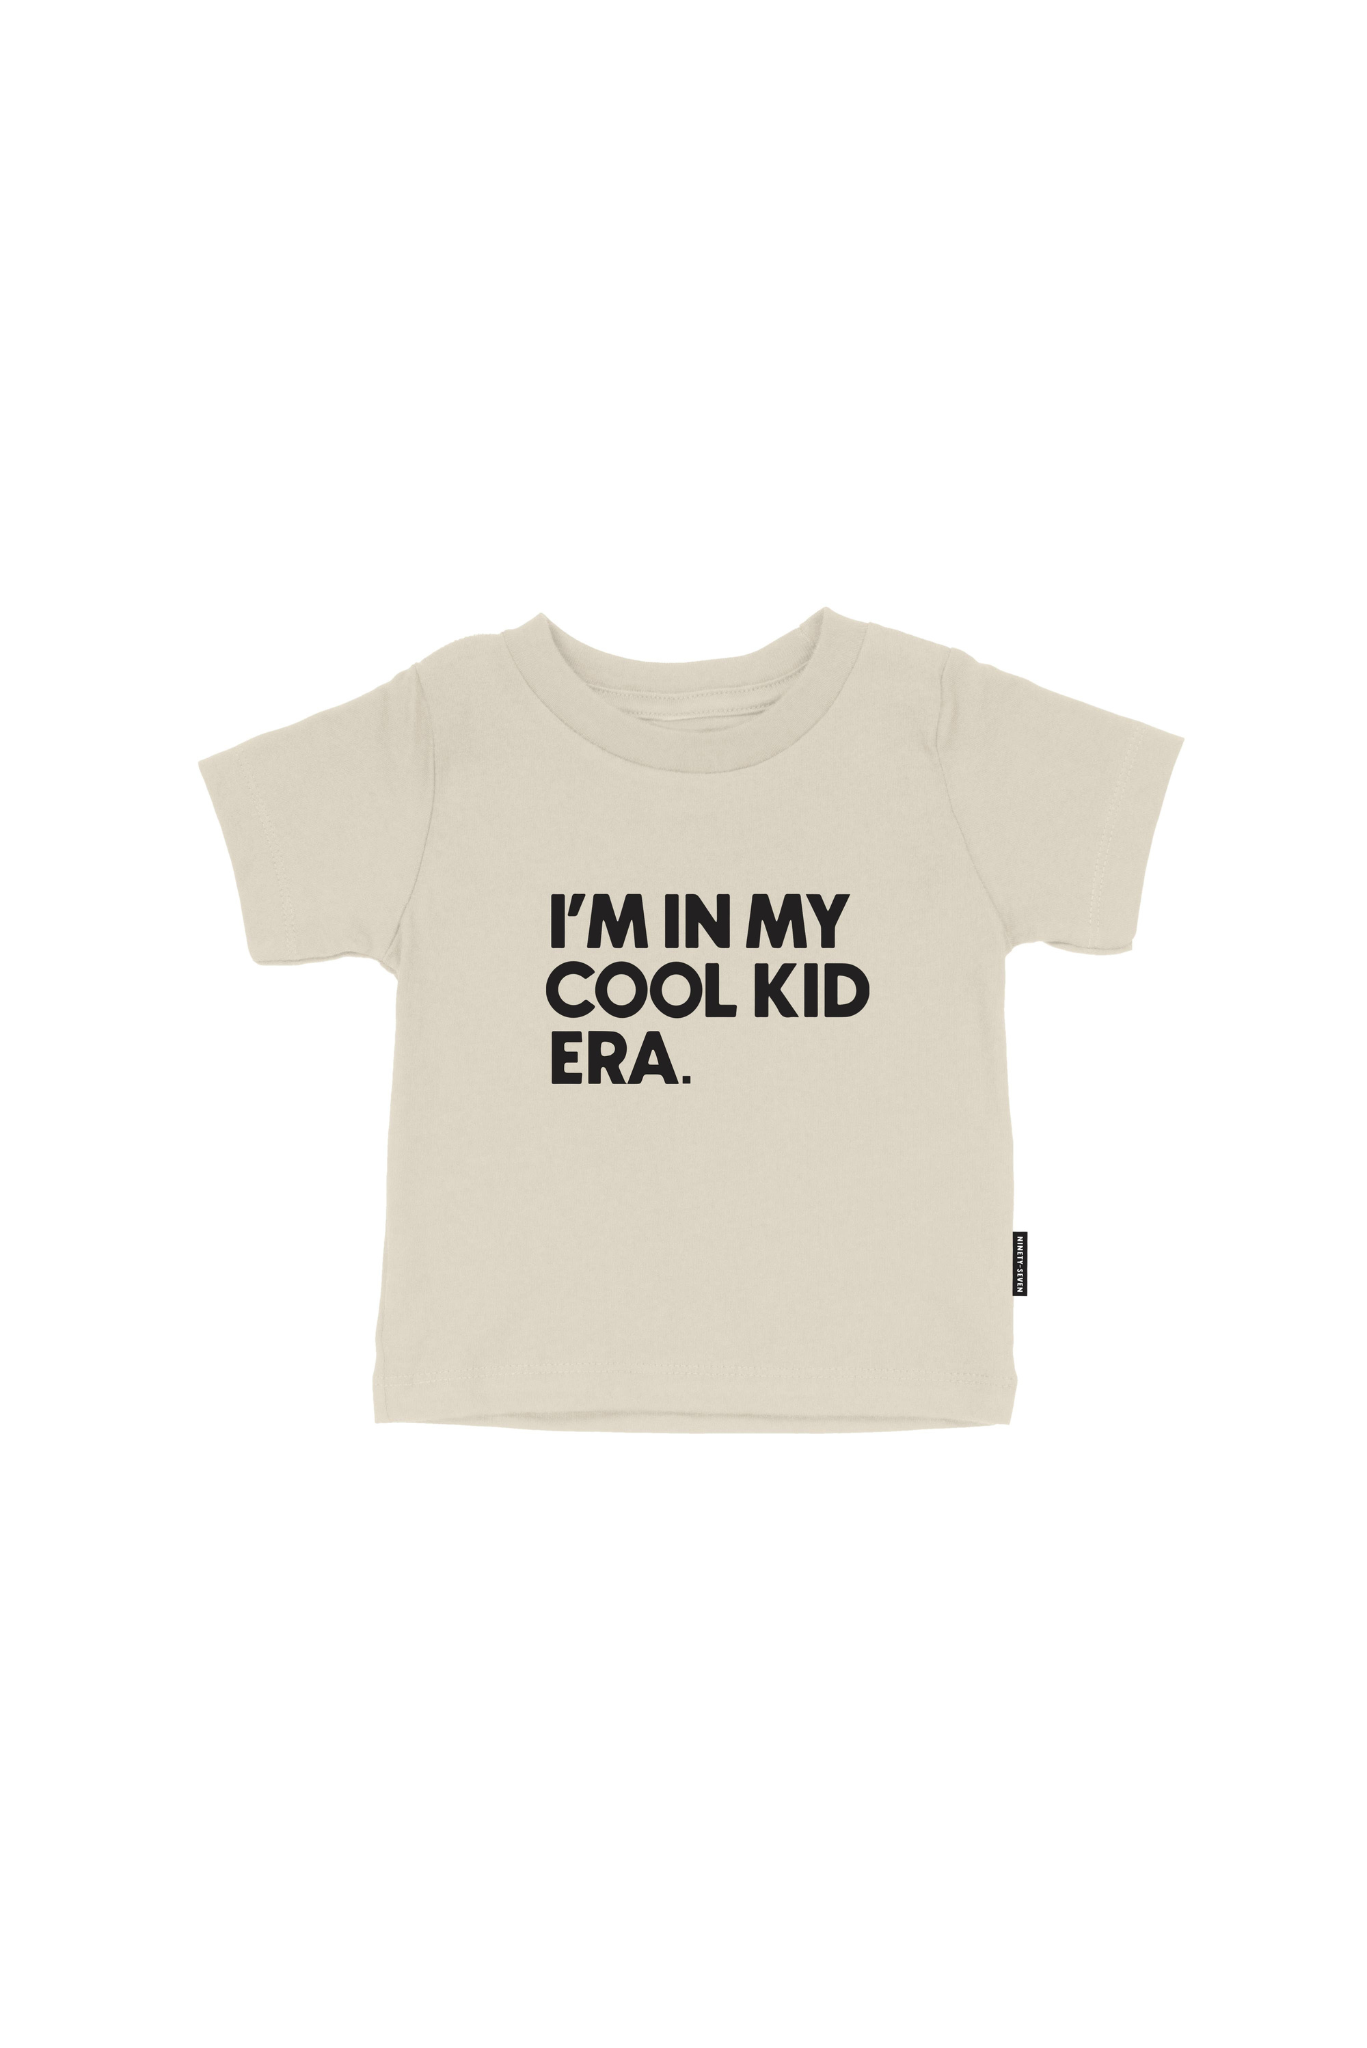 97 Design Co. - I'm In My Cool Kid Era - Kids Tee, Toddler T-shirt Modern